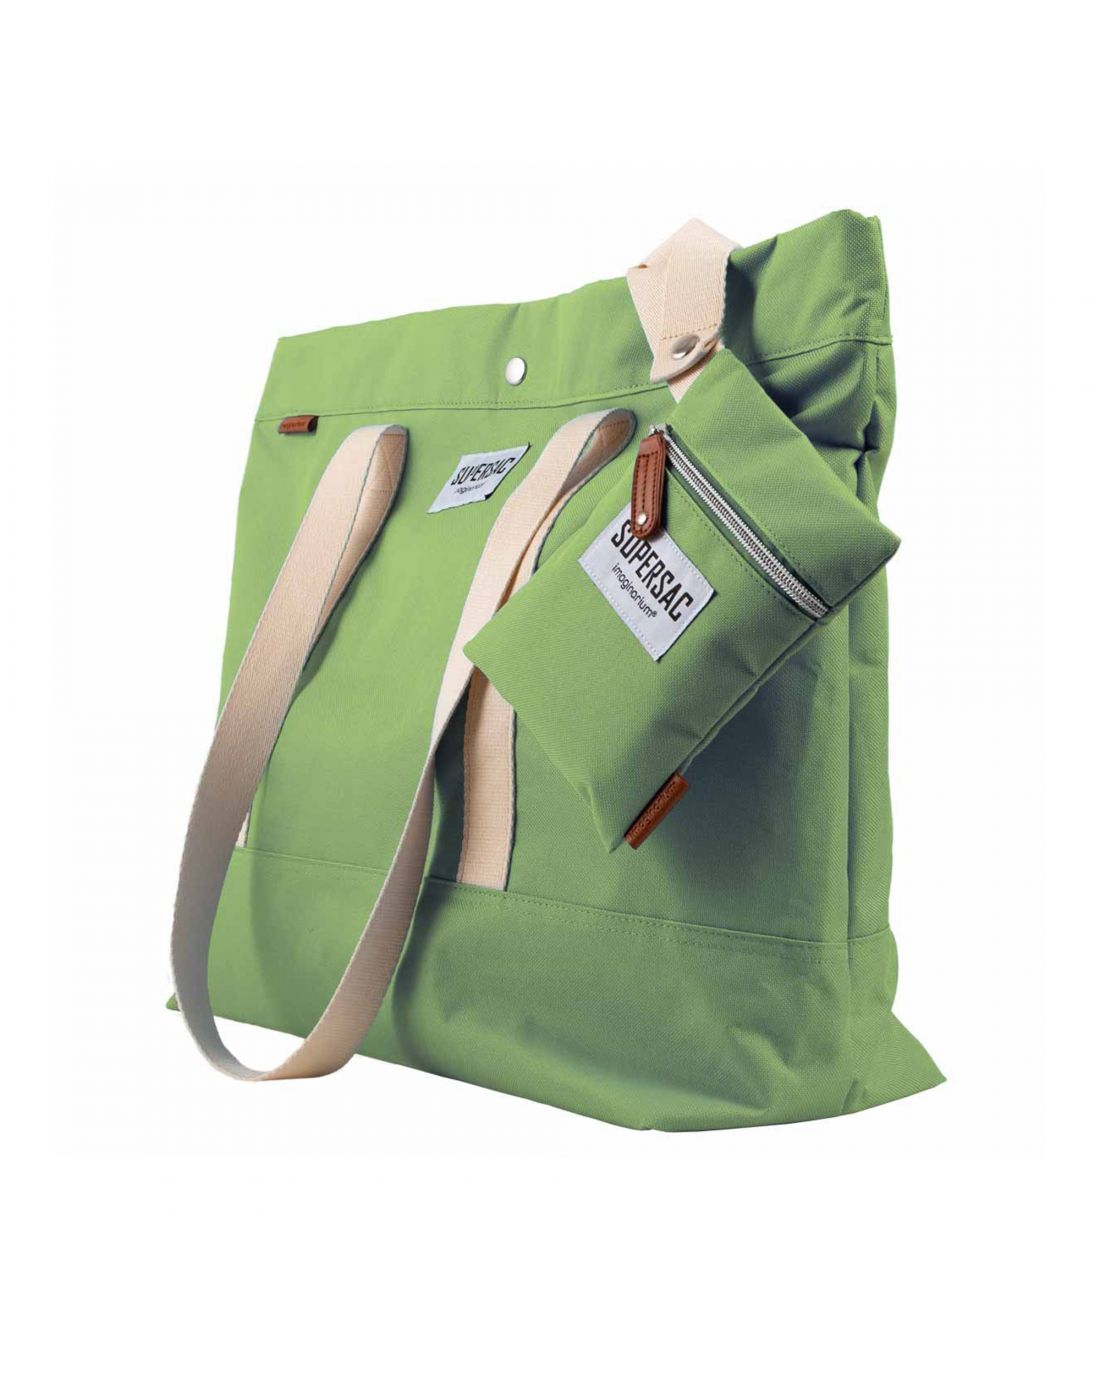 Imagianrium Tote Bag Supersac Green